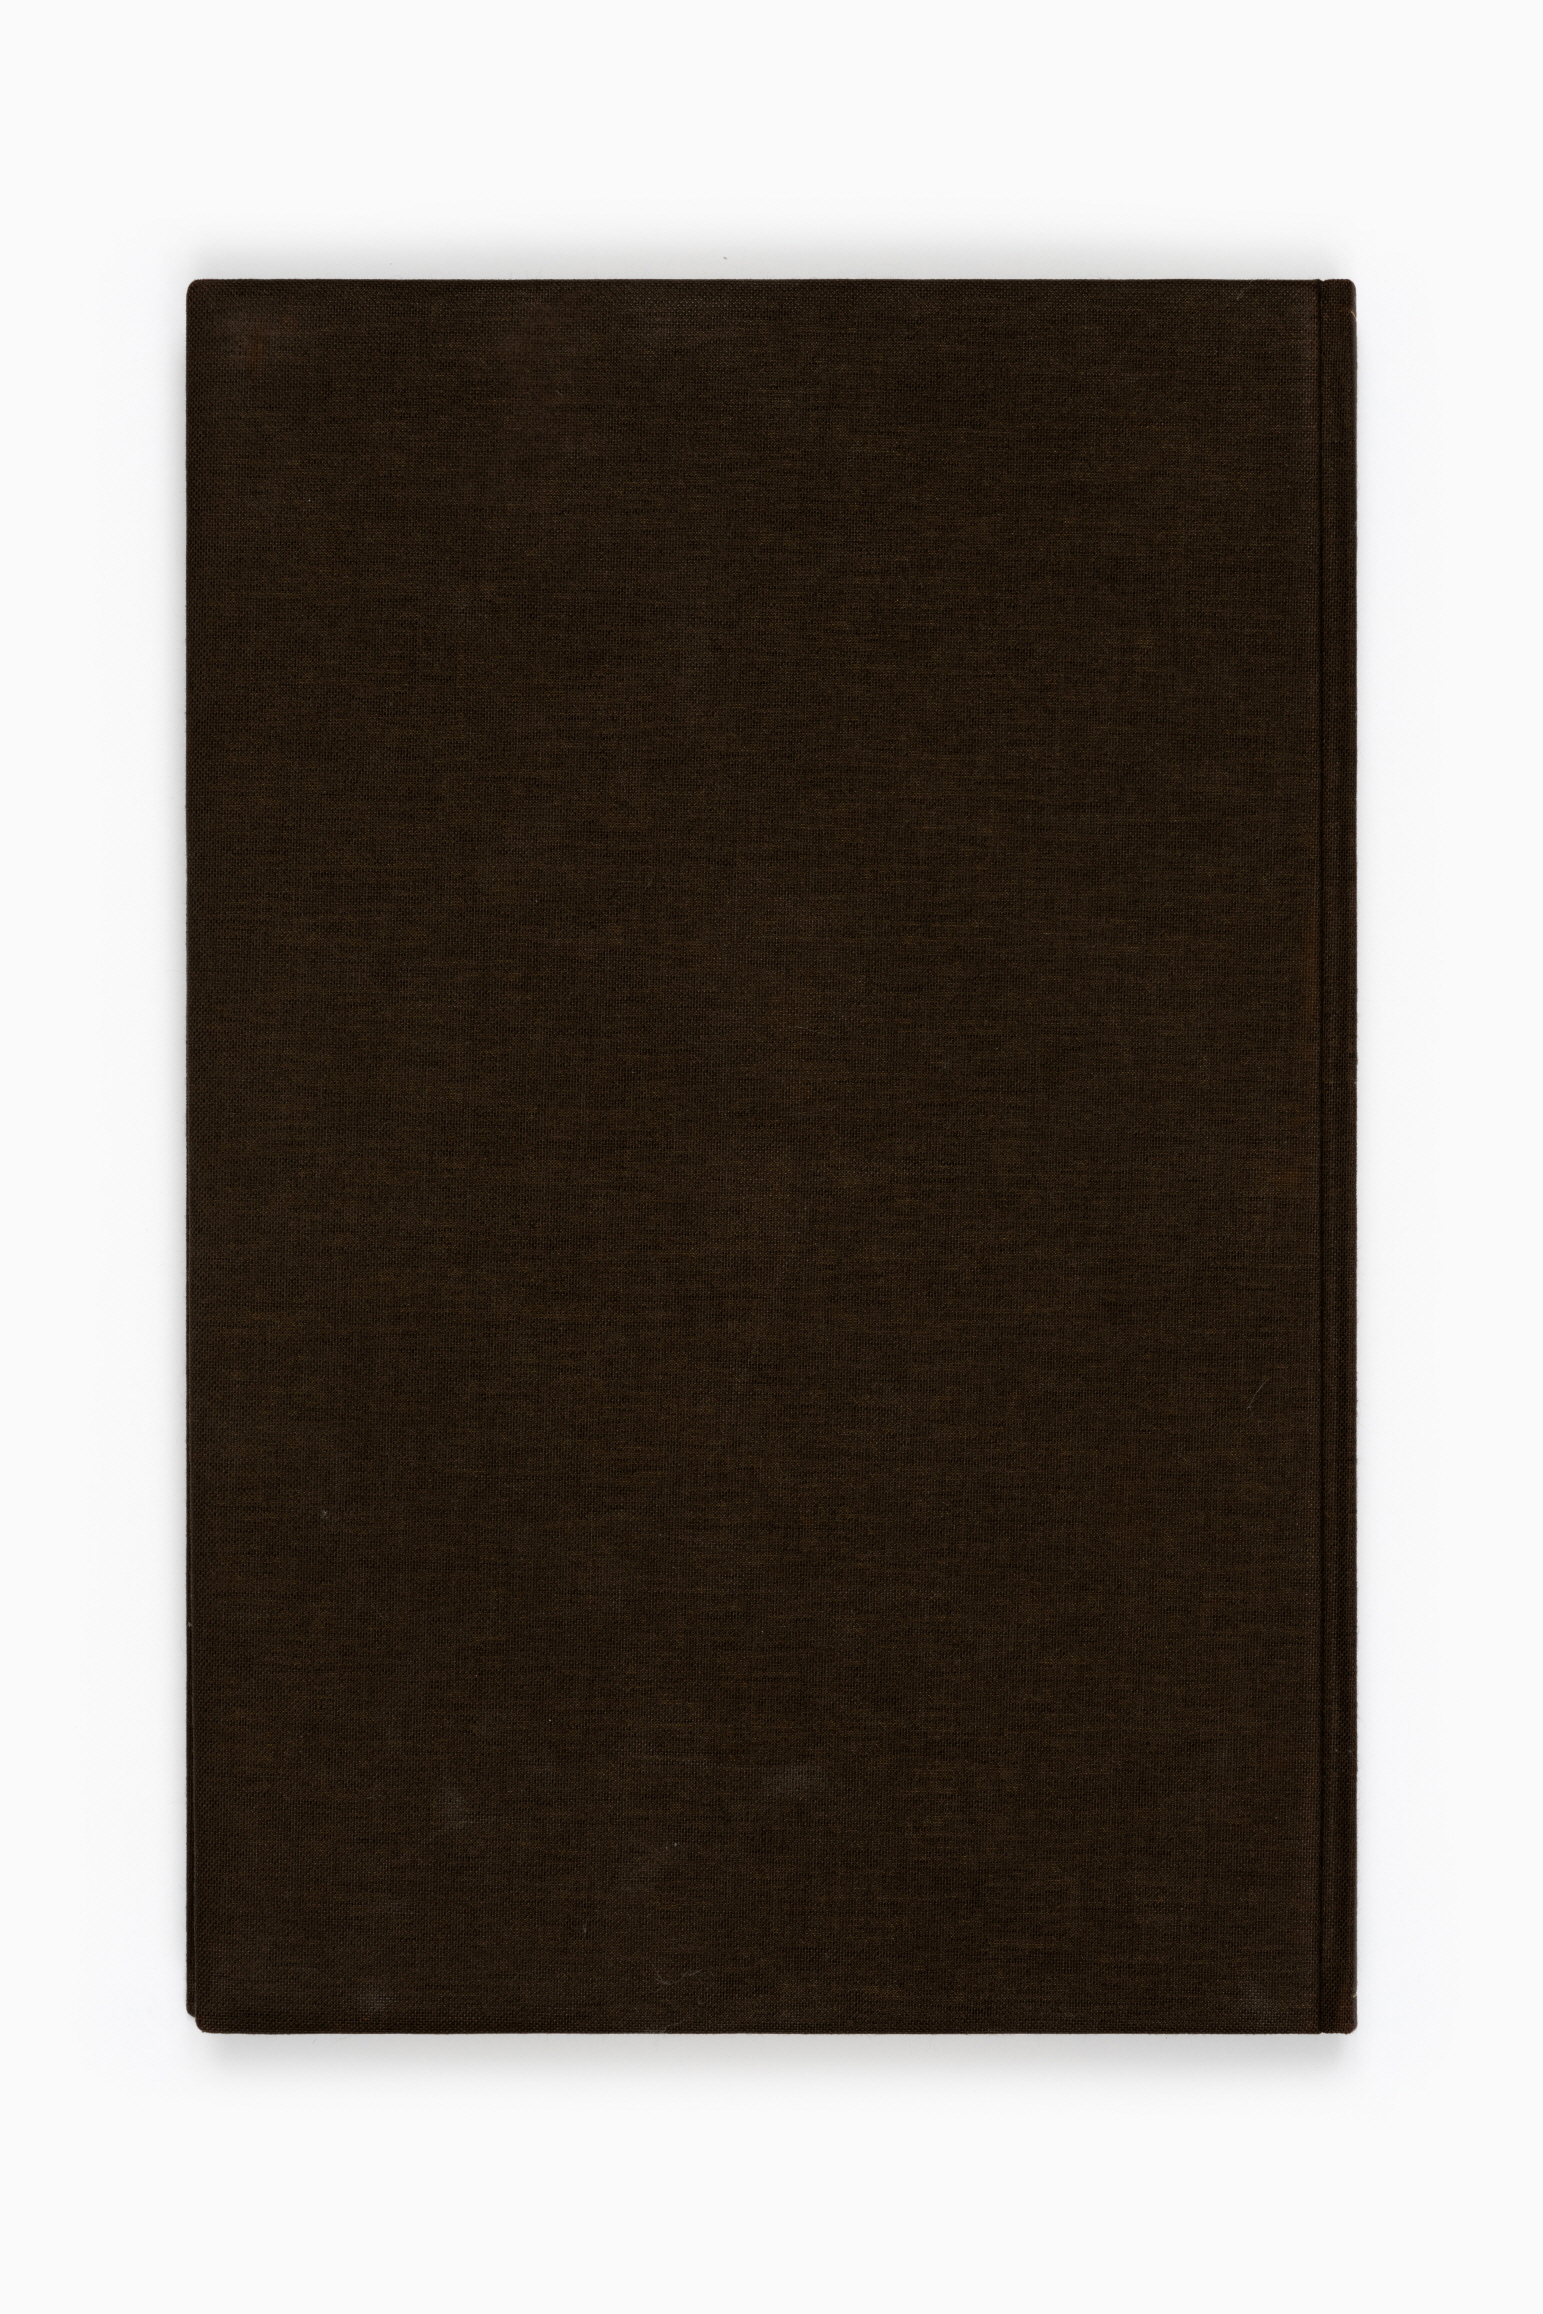 한어문전(초판본, 1881)176